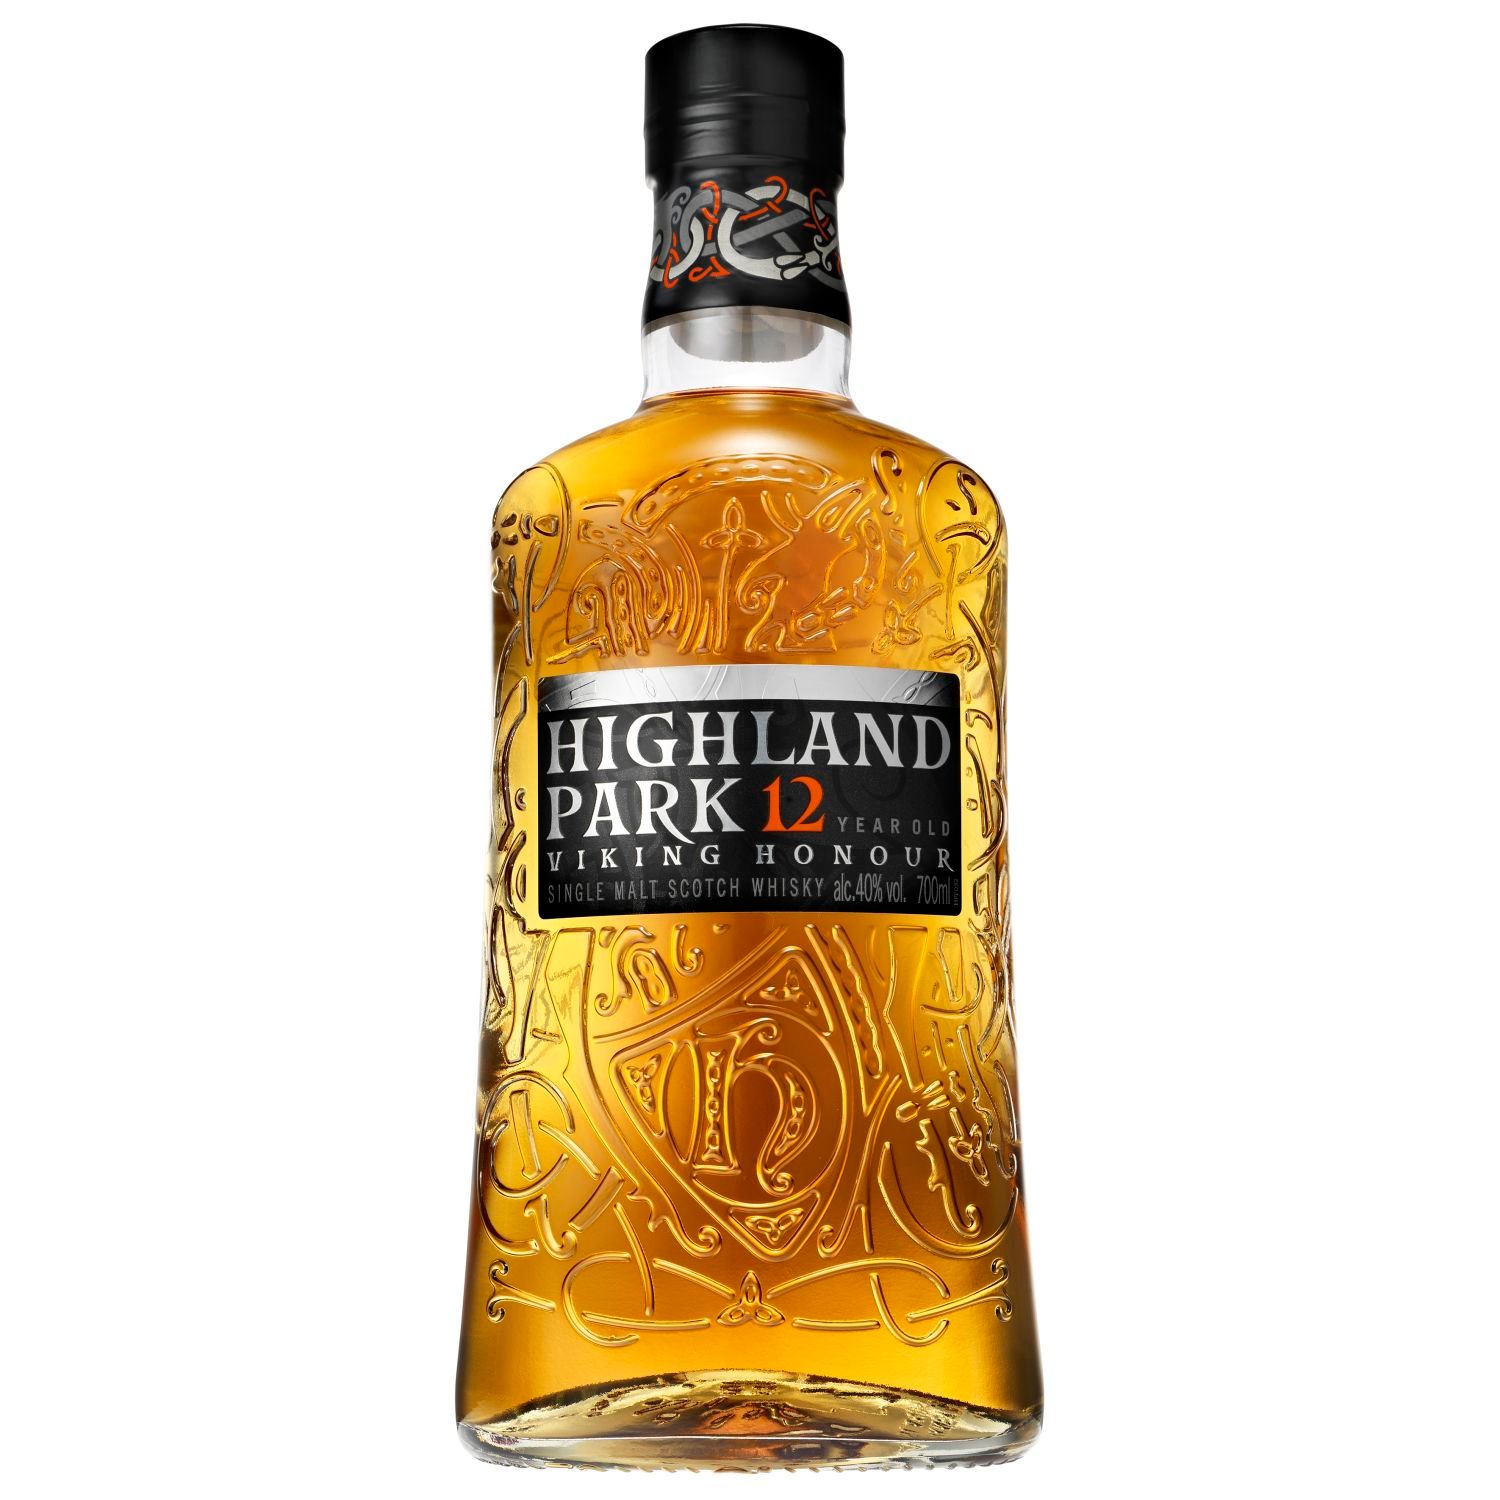 Highland Park Viking Honour 12 Year Old Single Malt 700mL Bottle